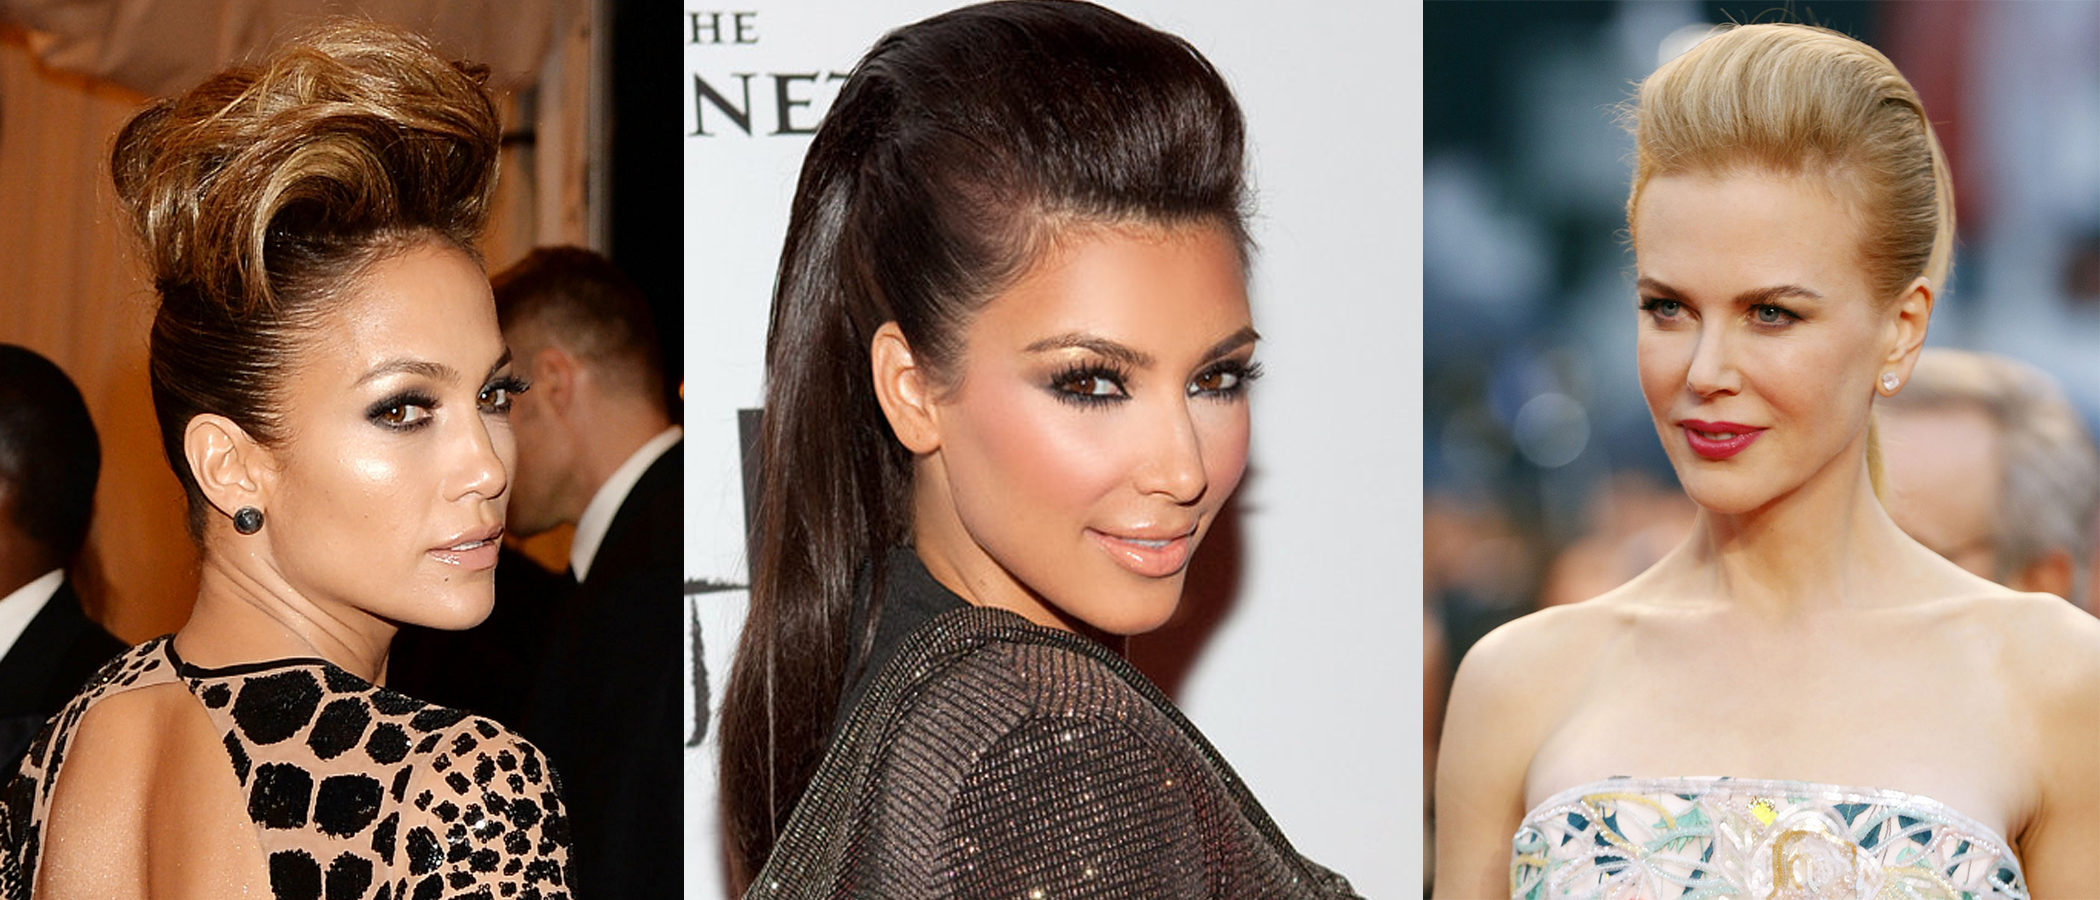 Liso tupe en coronilla y flequillo partido en dos  Kim kardashian  hair Kardashian beauty Celebrity wedding hair